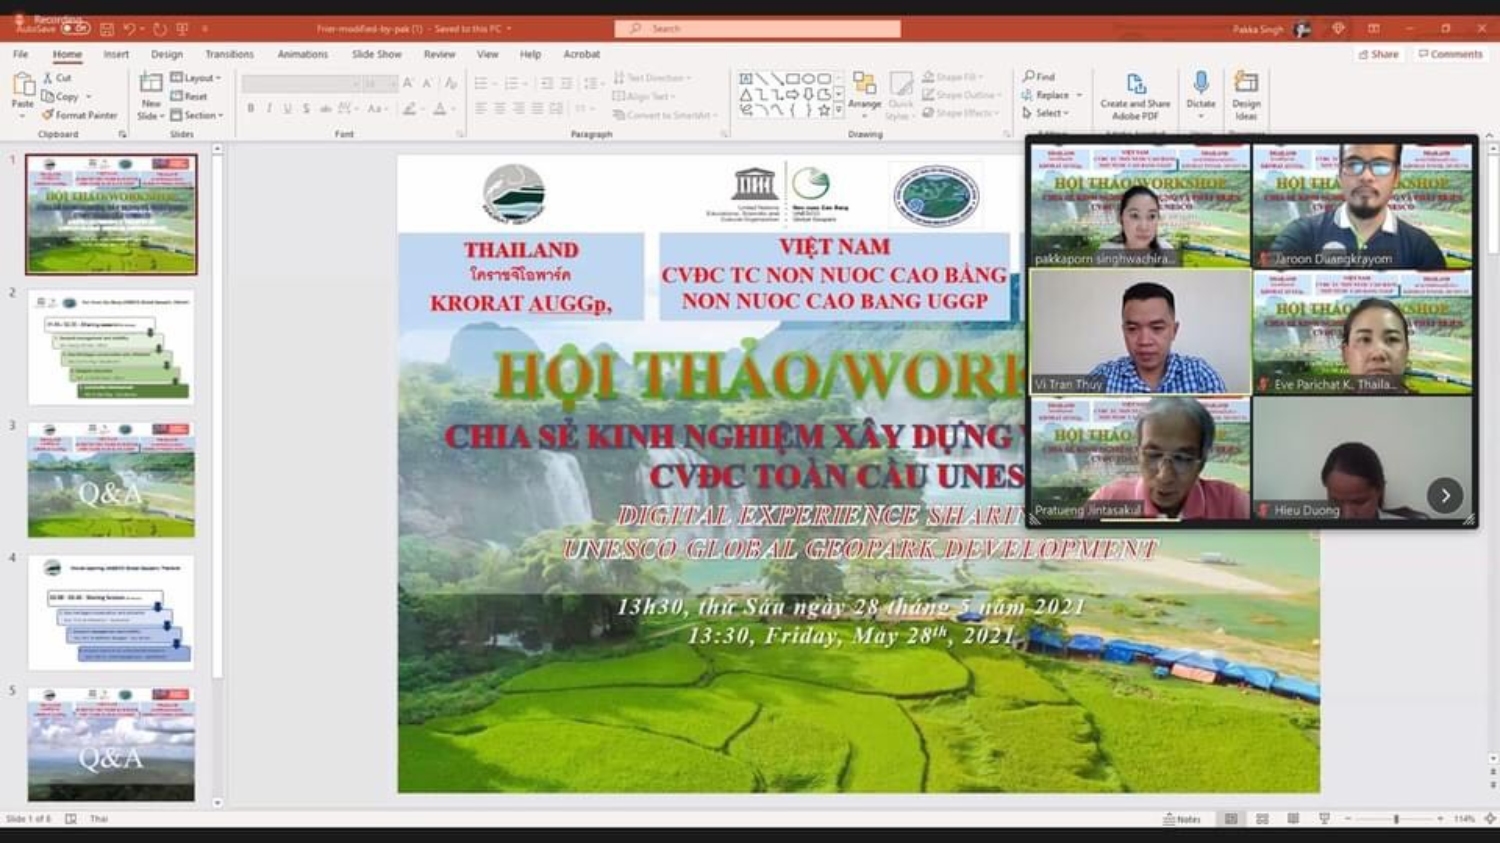 Hội thảo trực tuyến chia sẻ kinh nghiệm xây dựng và phát triển Công viên địa chất Toàn cầu Unesco giữa Công viên địa chất Toàn cầu Non nước Cao Bằng và Công viên địa chất tiềm năng Khorat Thái Lan